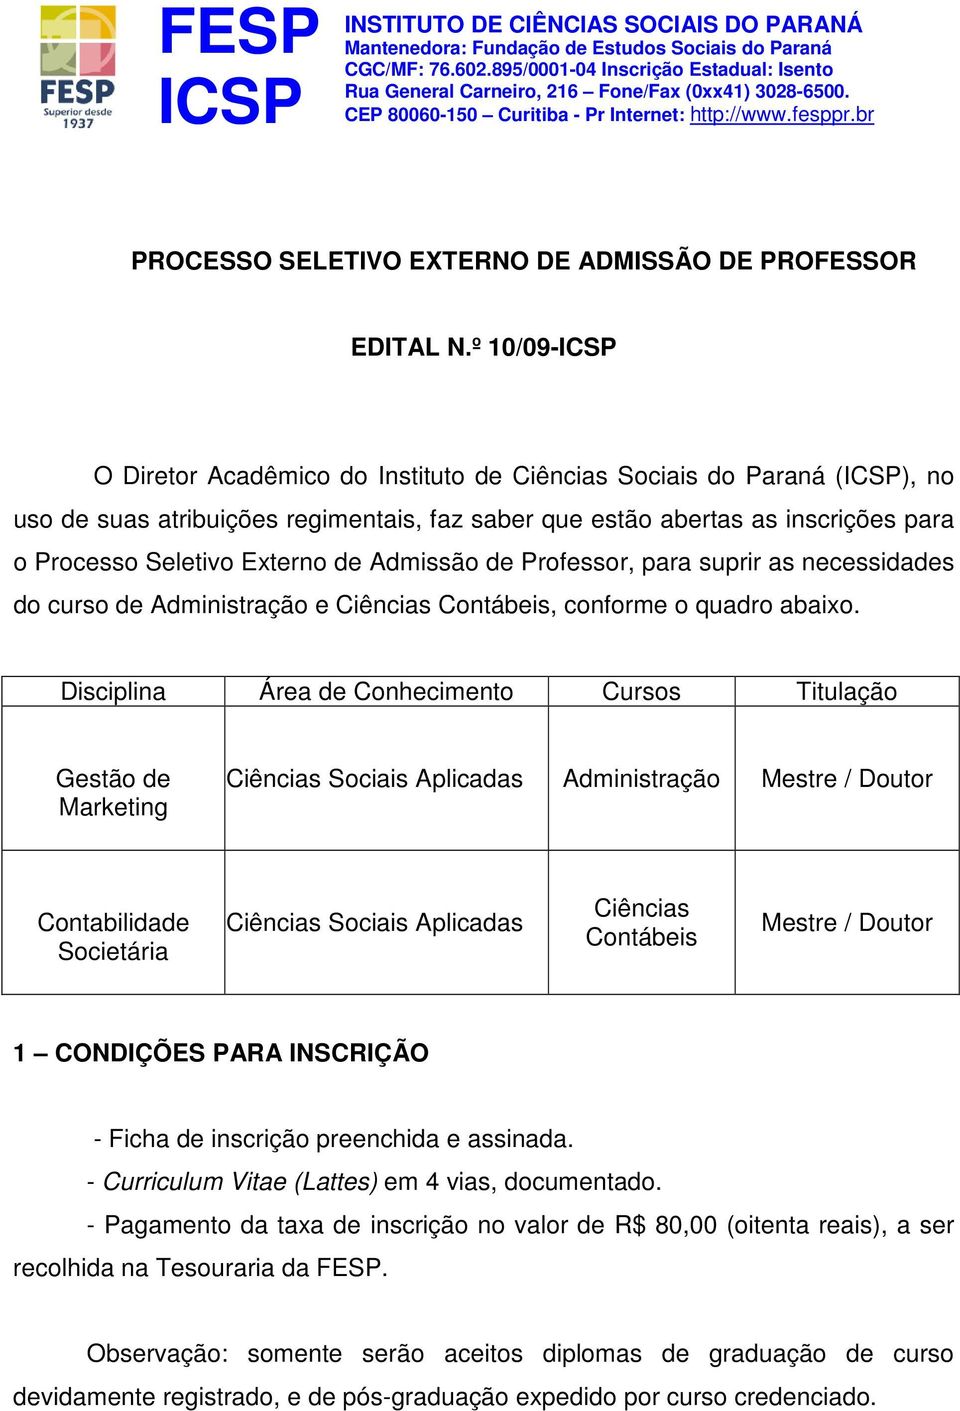 Admissão de Professor, para suprir as necessidades do curso de Administração e Ciências Contábeis, conforme o quadro abaixo.